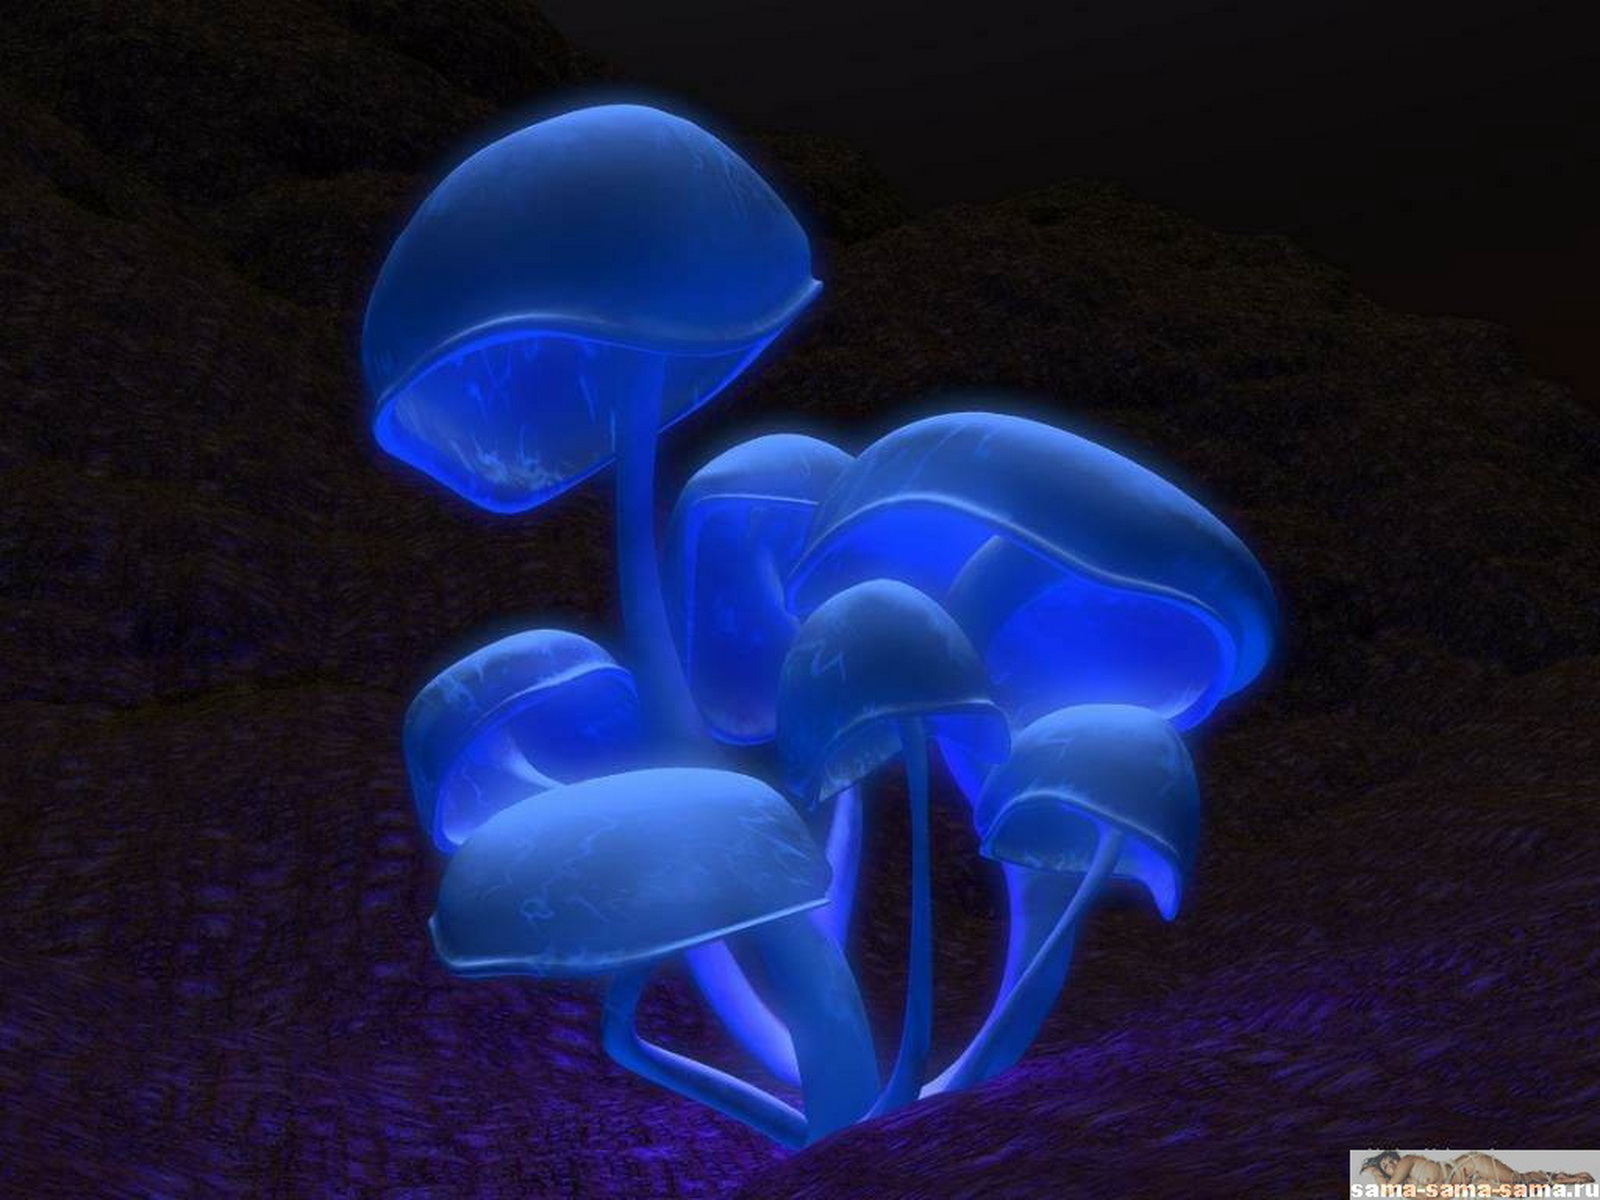 поганки, светящиеся синие грибы, темно фиолетовый фон, 3D обои для рабочего стола